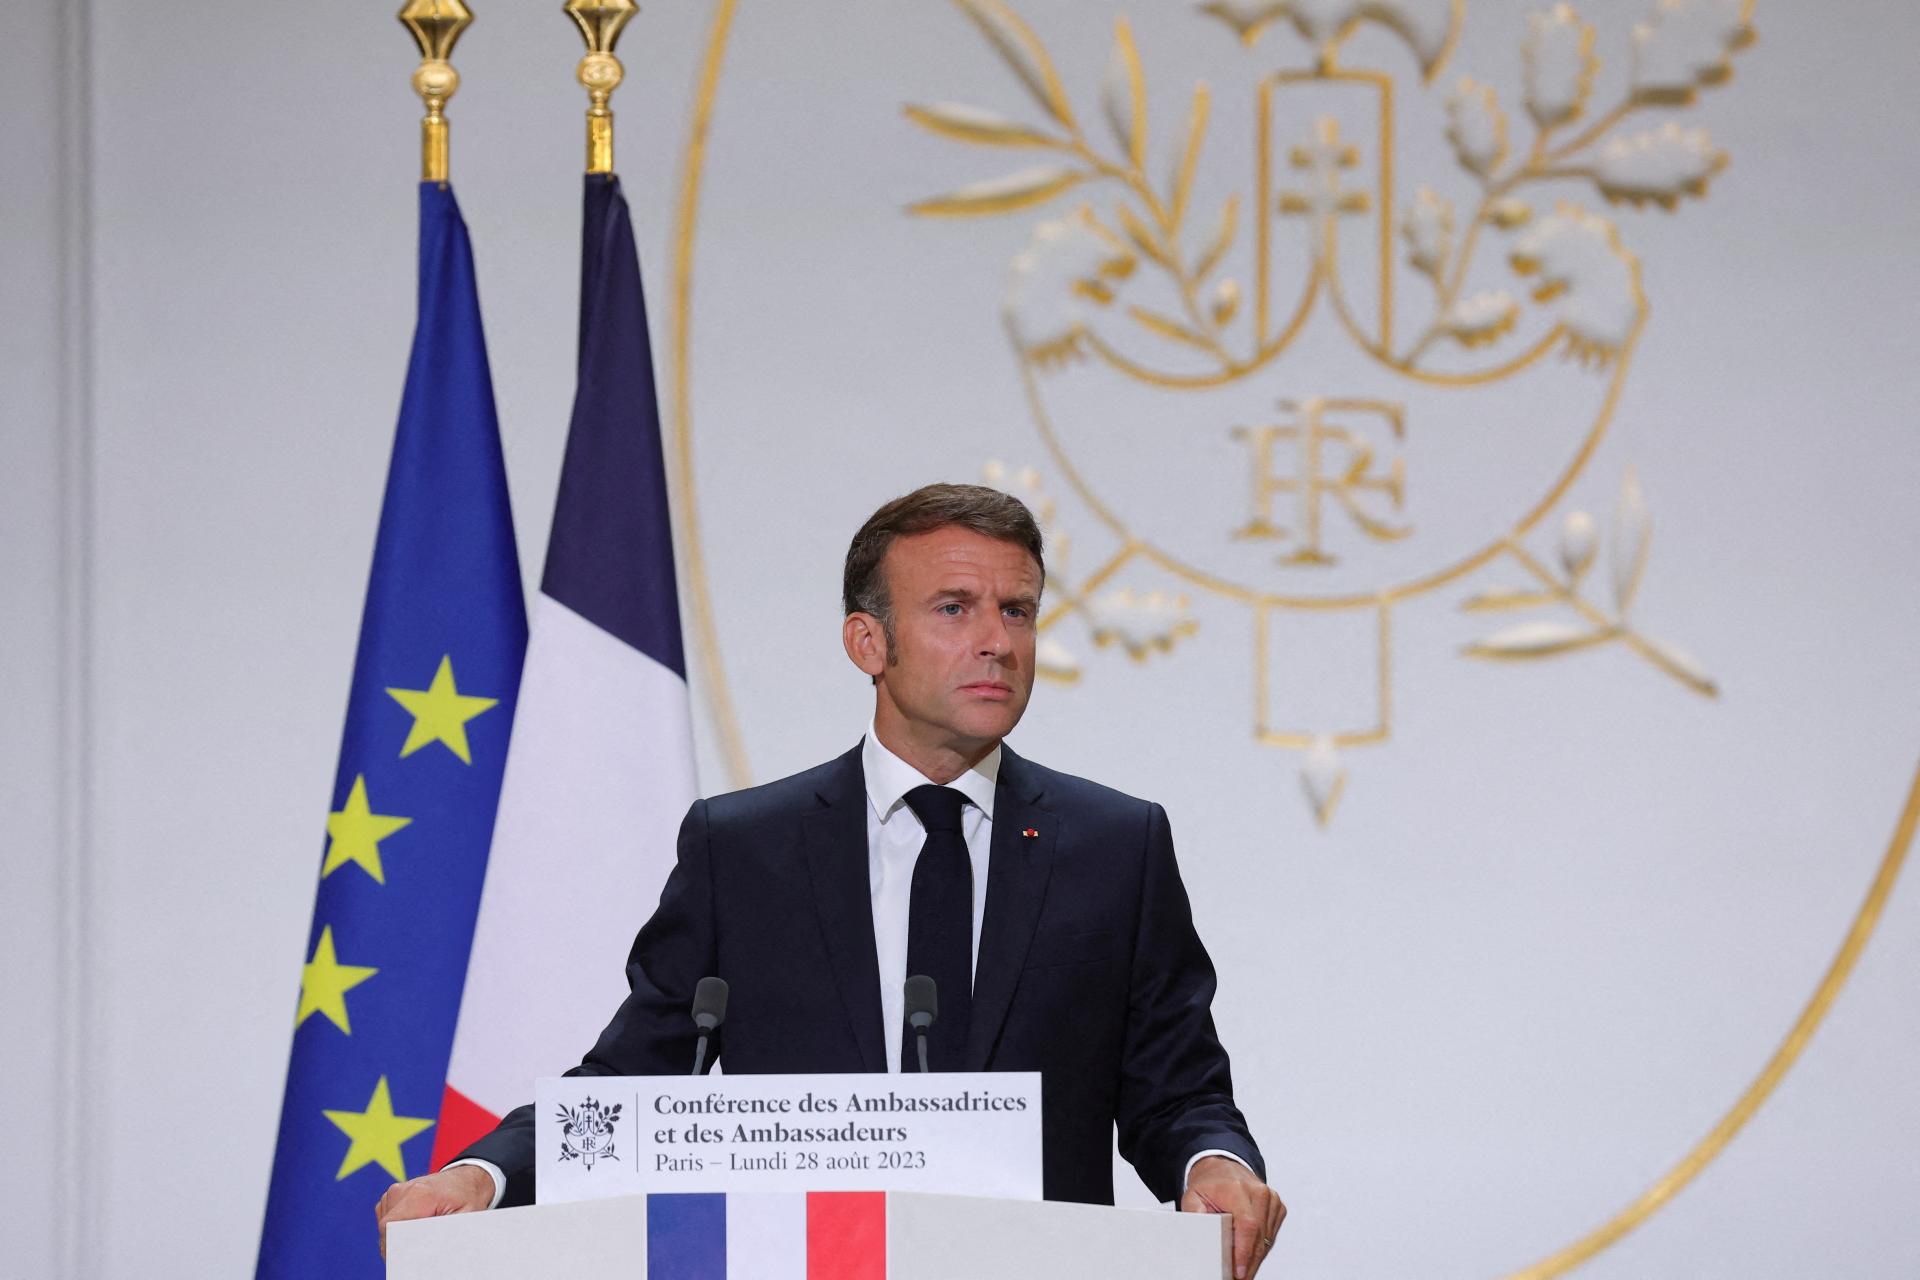 Francúzsko ďalej podporuje Irak v boji proti Islamskému štátu, vyhlásil Macron po smrti troch vojakov